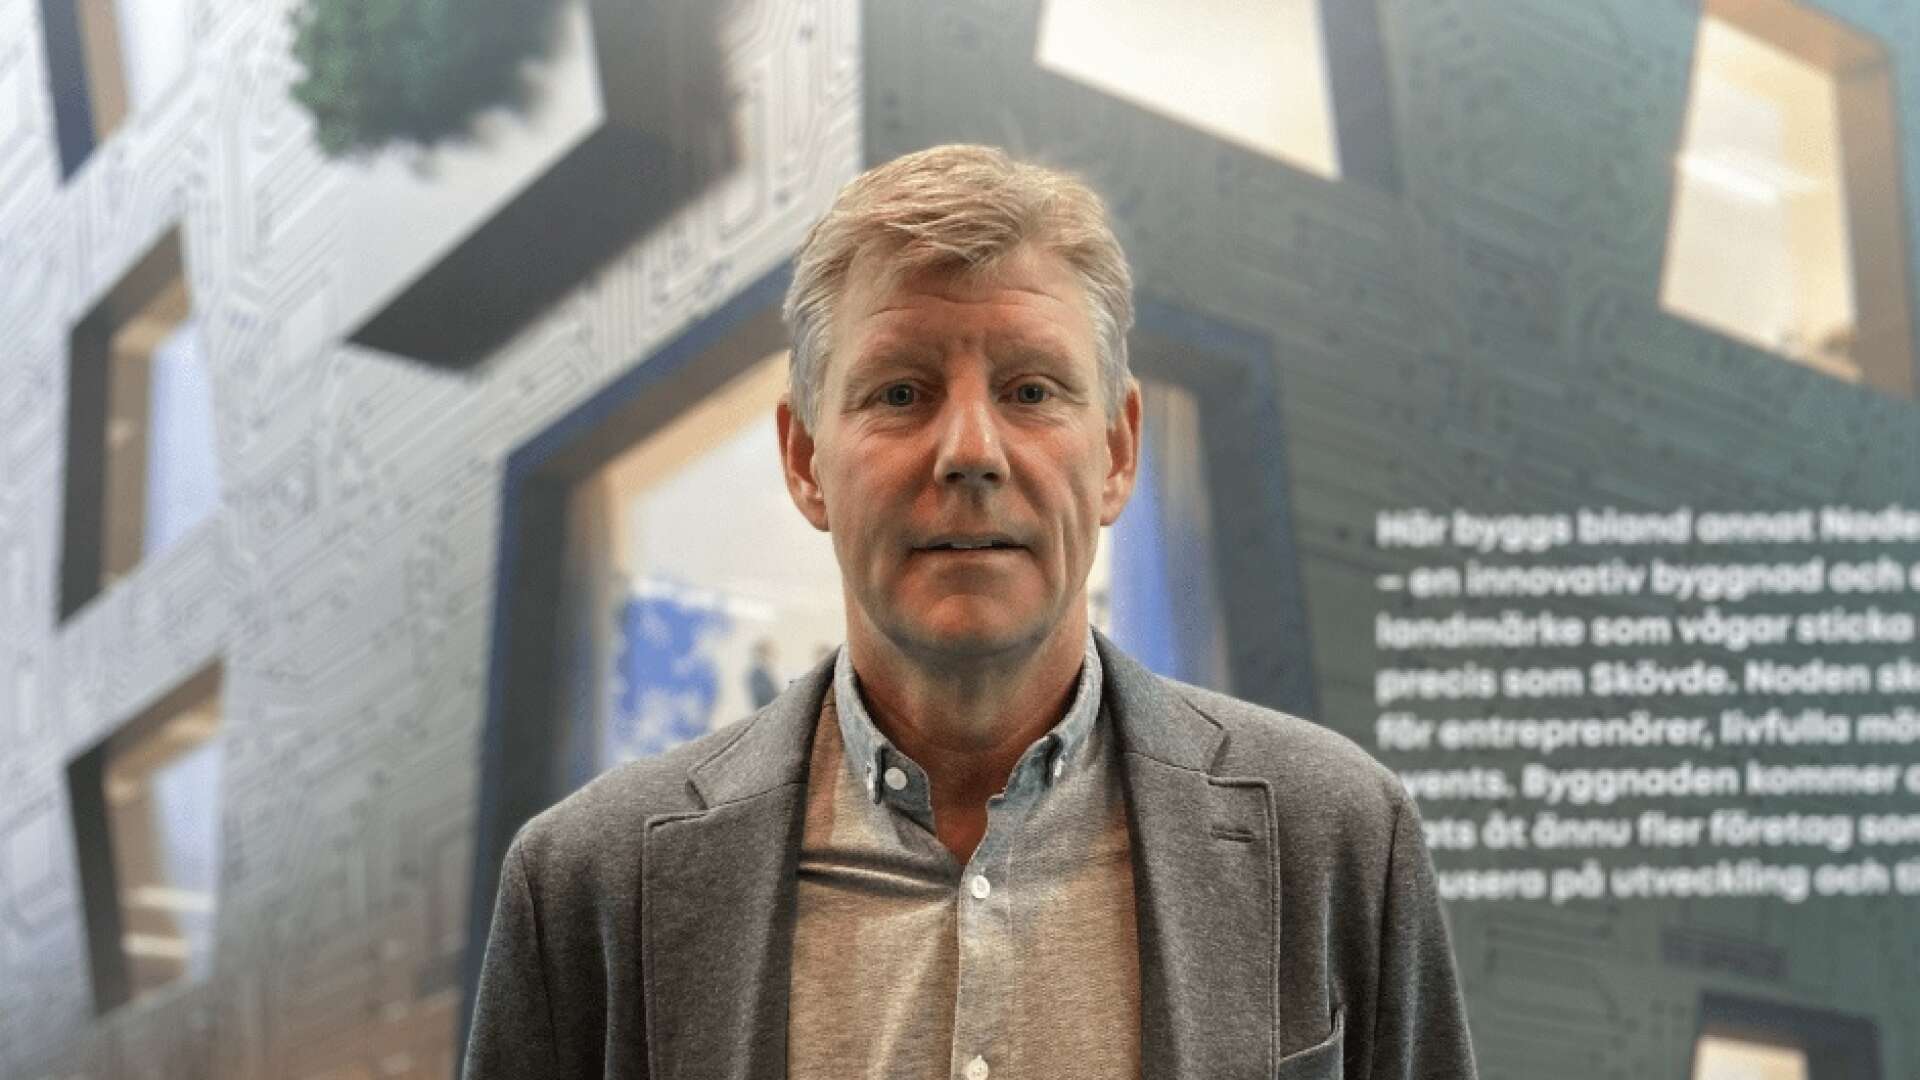 Kenneth Johansson är Skövde kommuns nye näringslivschef, en tjänst han tillträder den 1 maj.